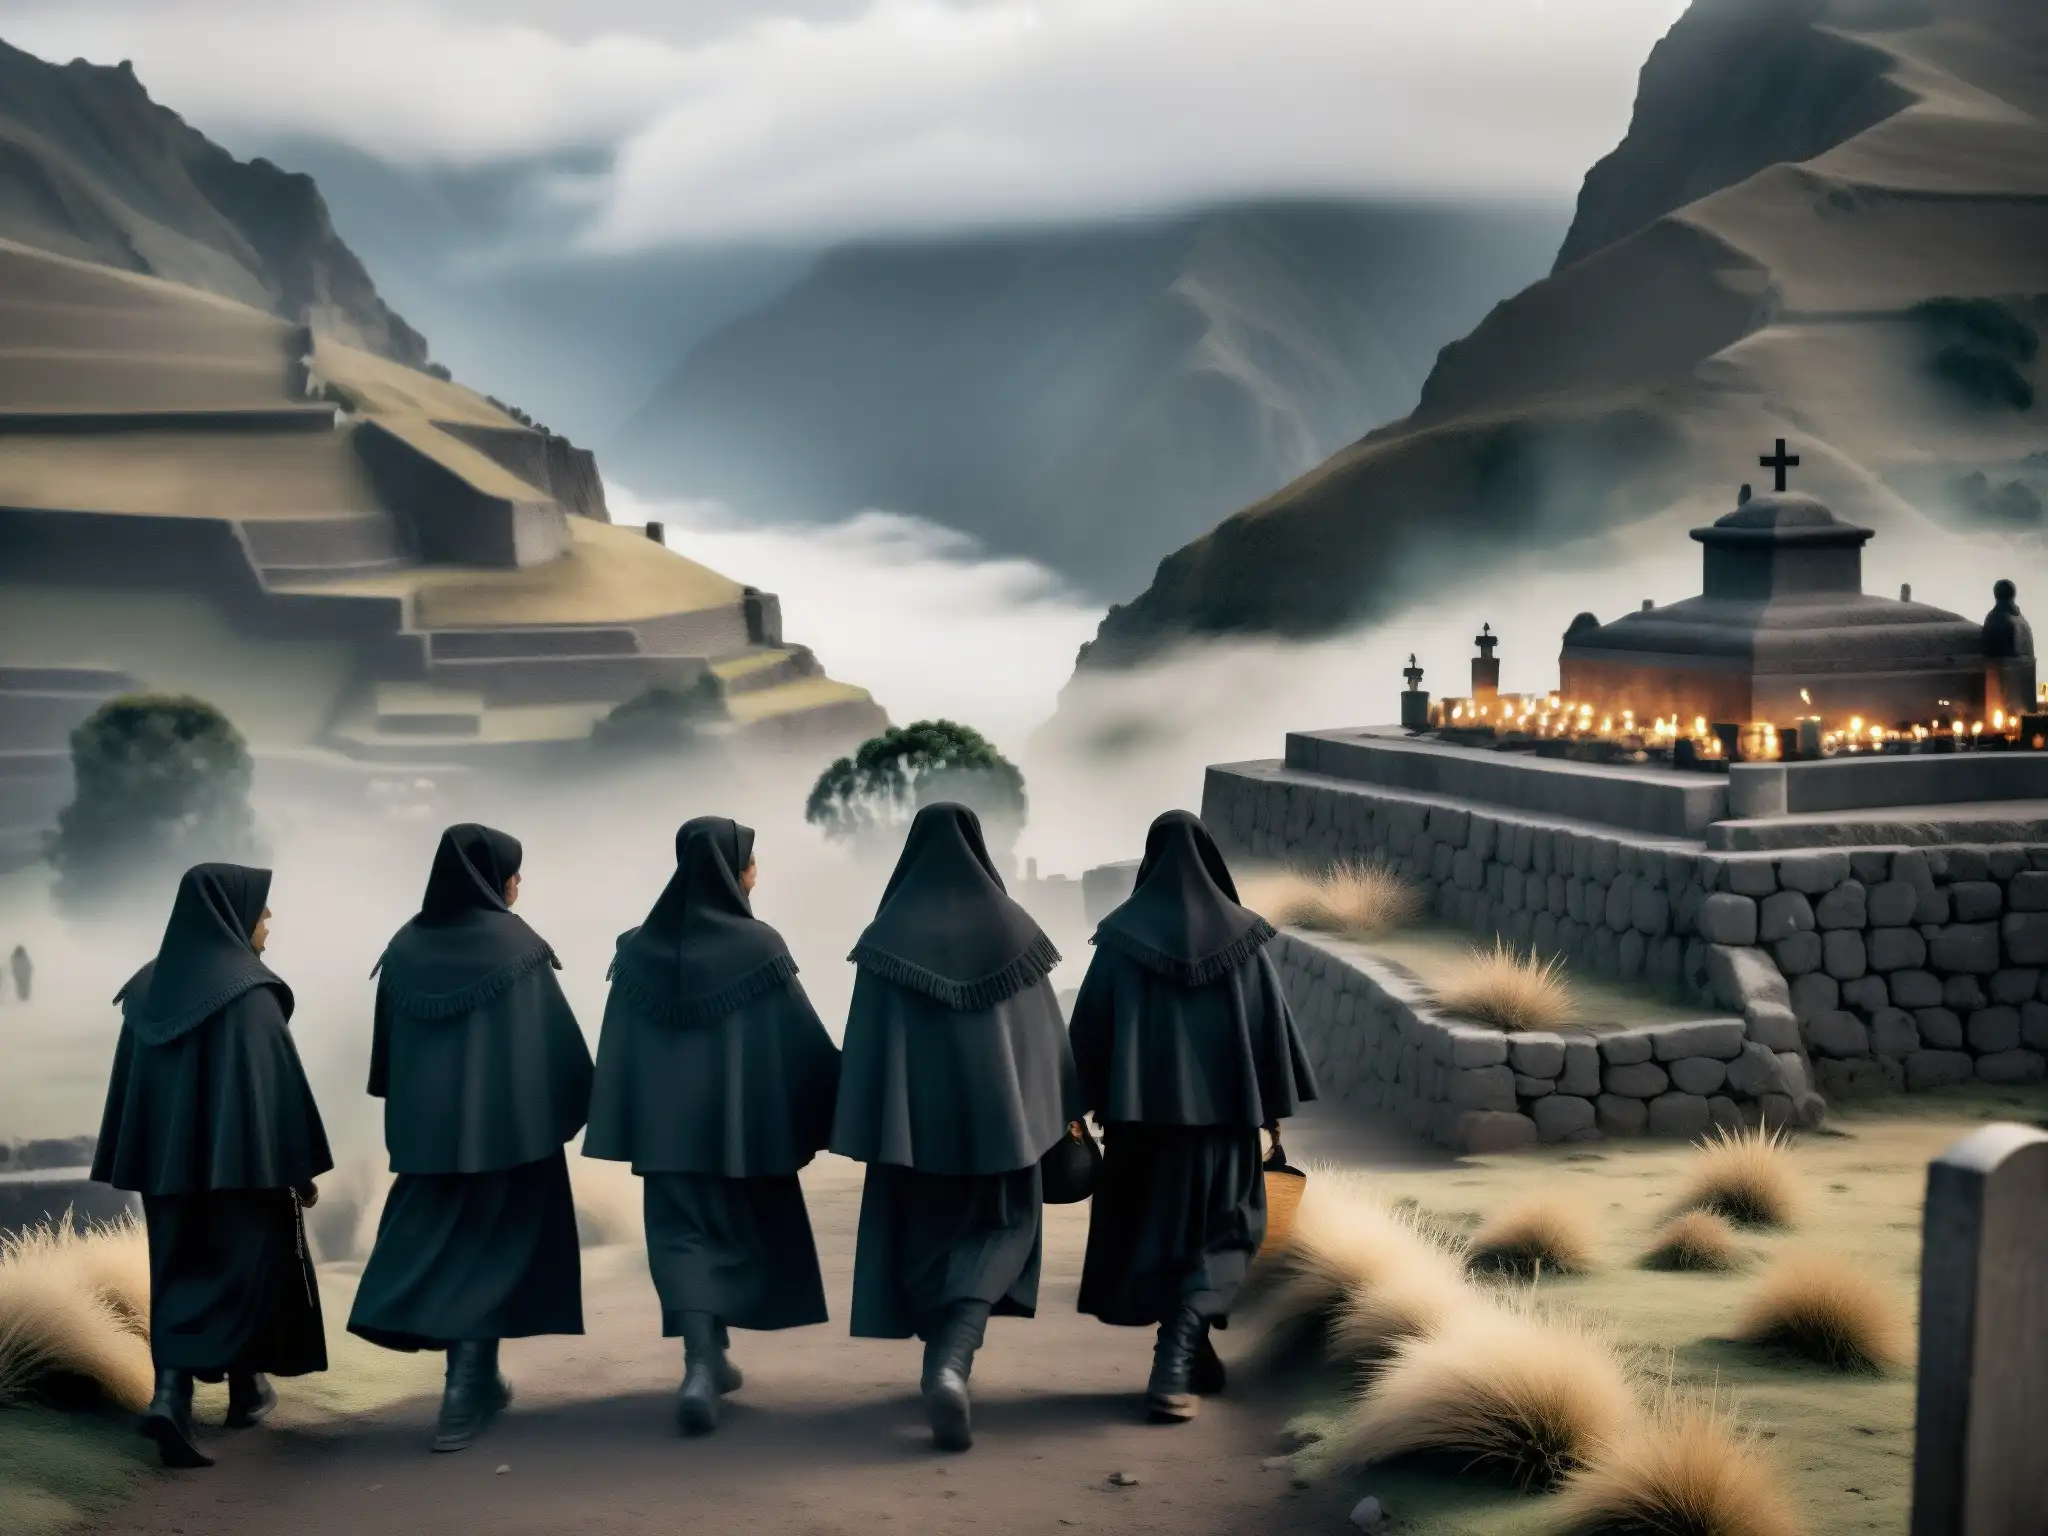 Un misterioso cortejo fúnebre andino de mujeres vestidas de negro, rodeadas de montañas neblinosas y ruinas antiguas